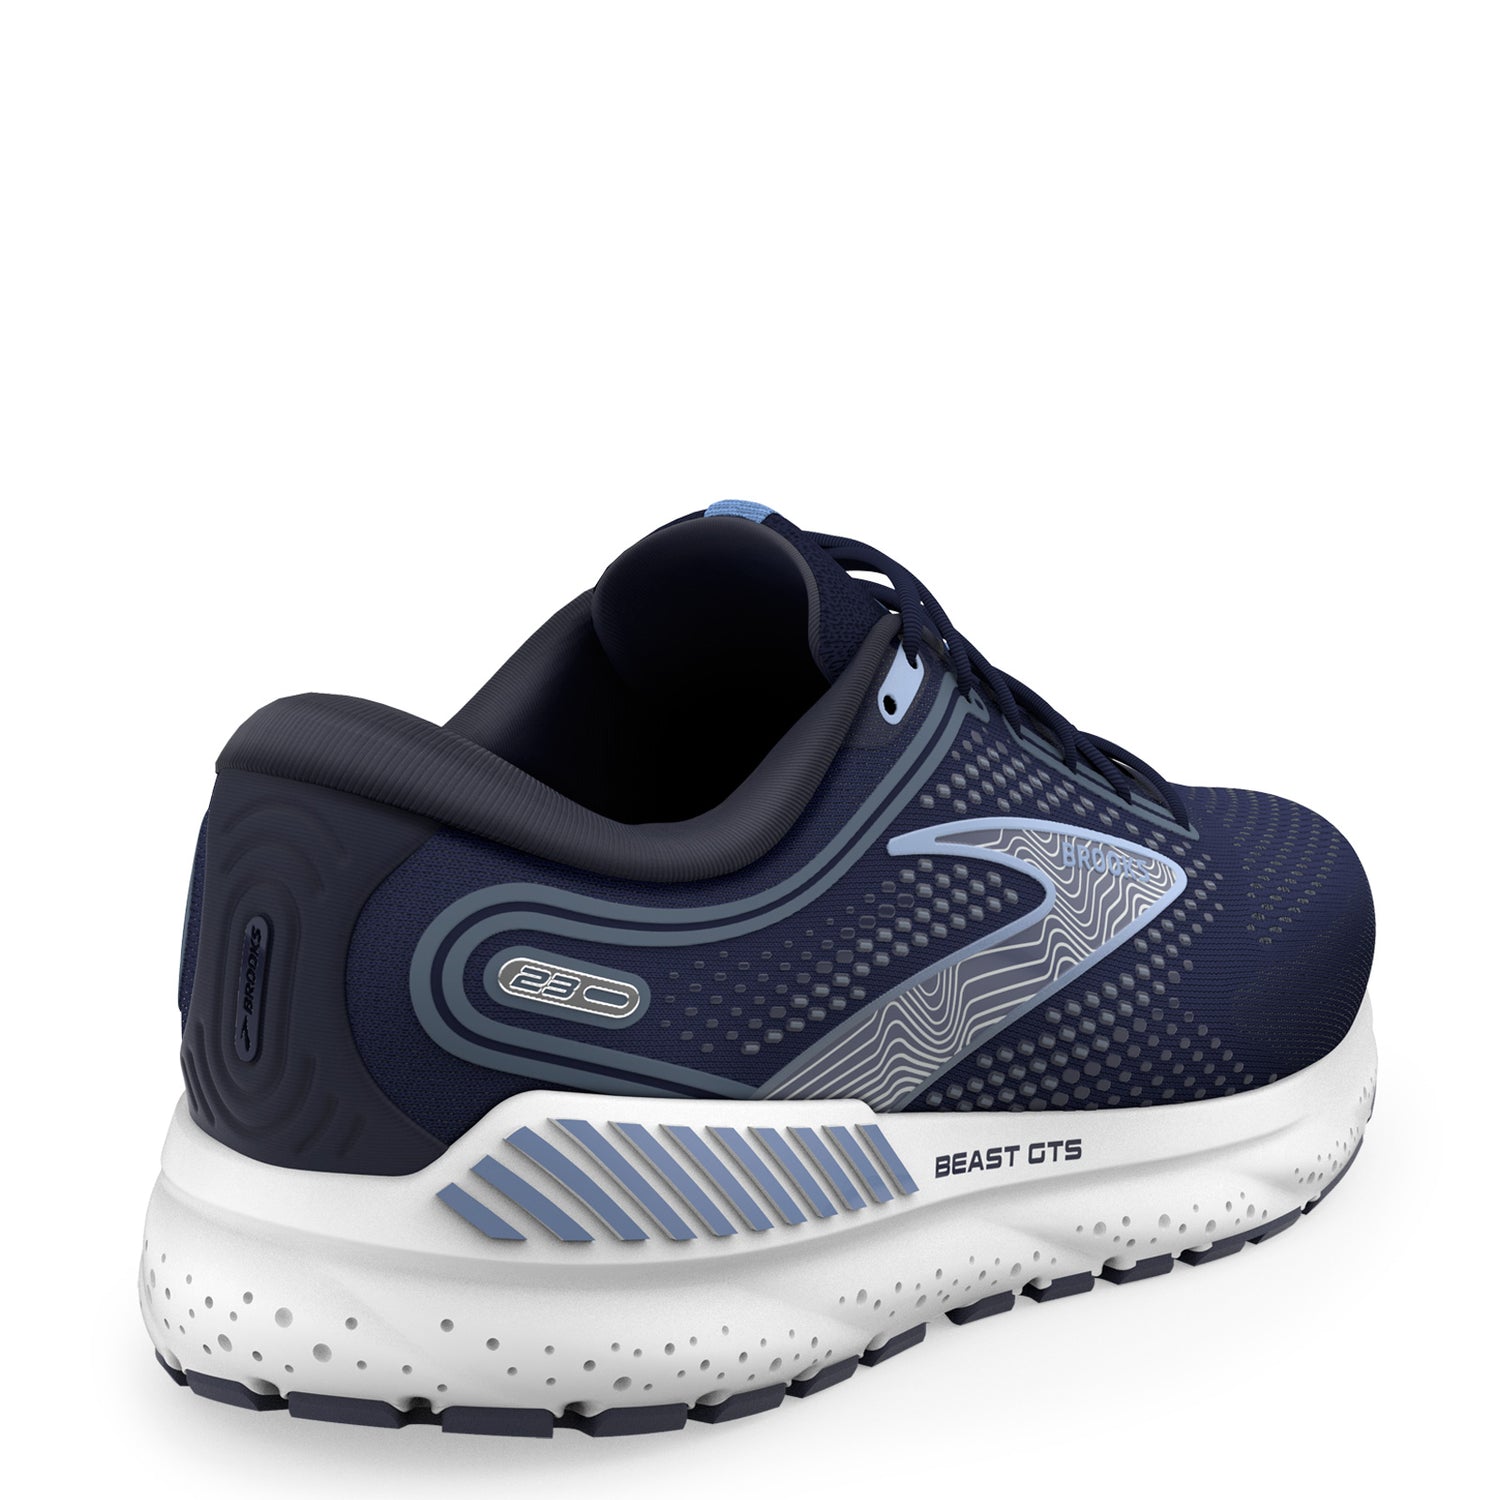 Peltz Shoes  Men's Brooks Beast GTS 23 Running Shoe - Extra Wide Width Navy/Blue/White 110401 4E 495